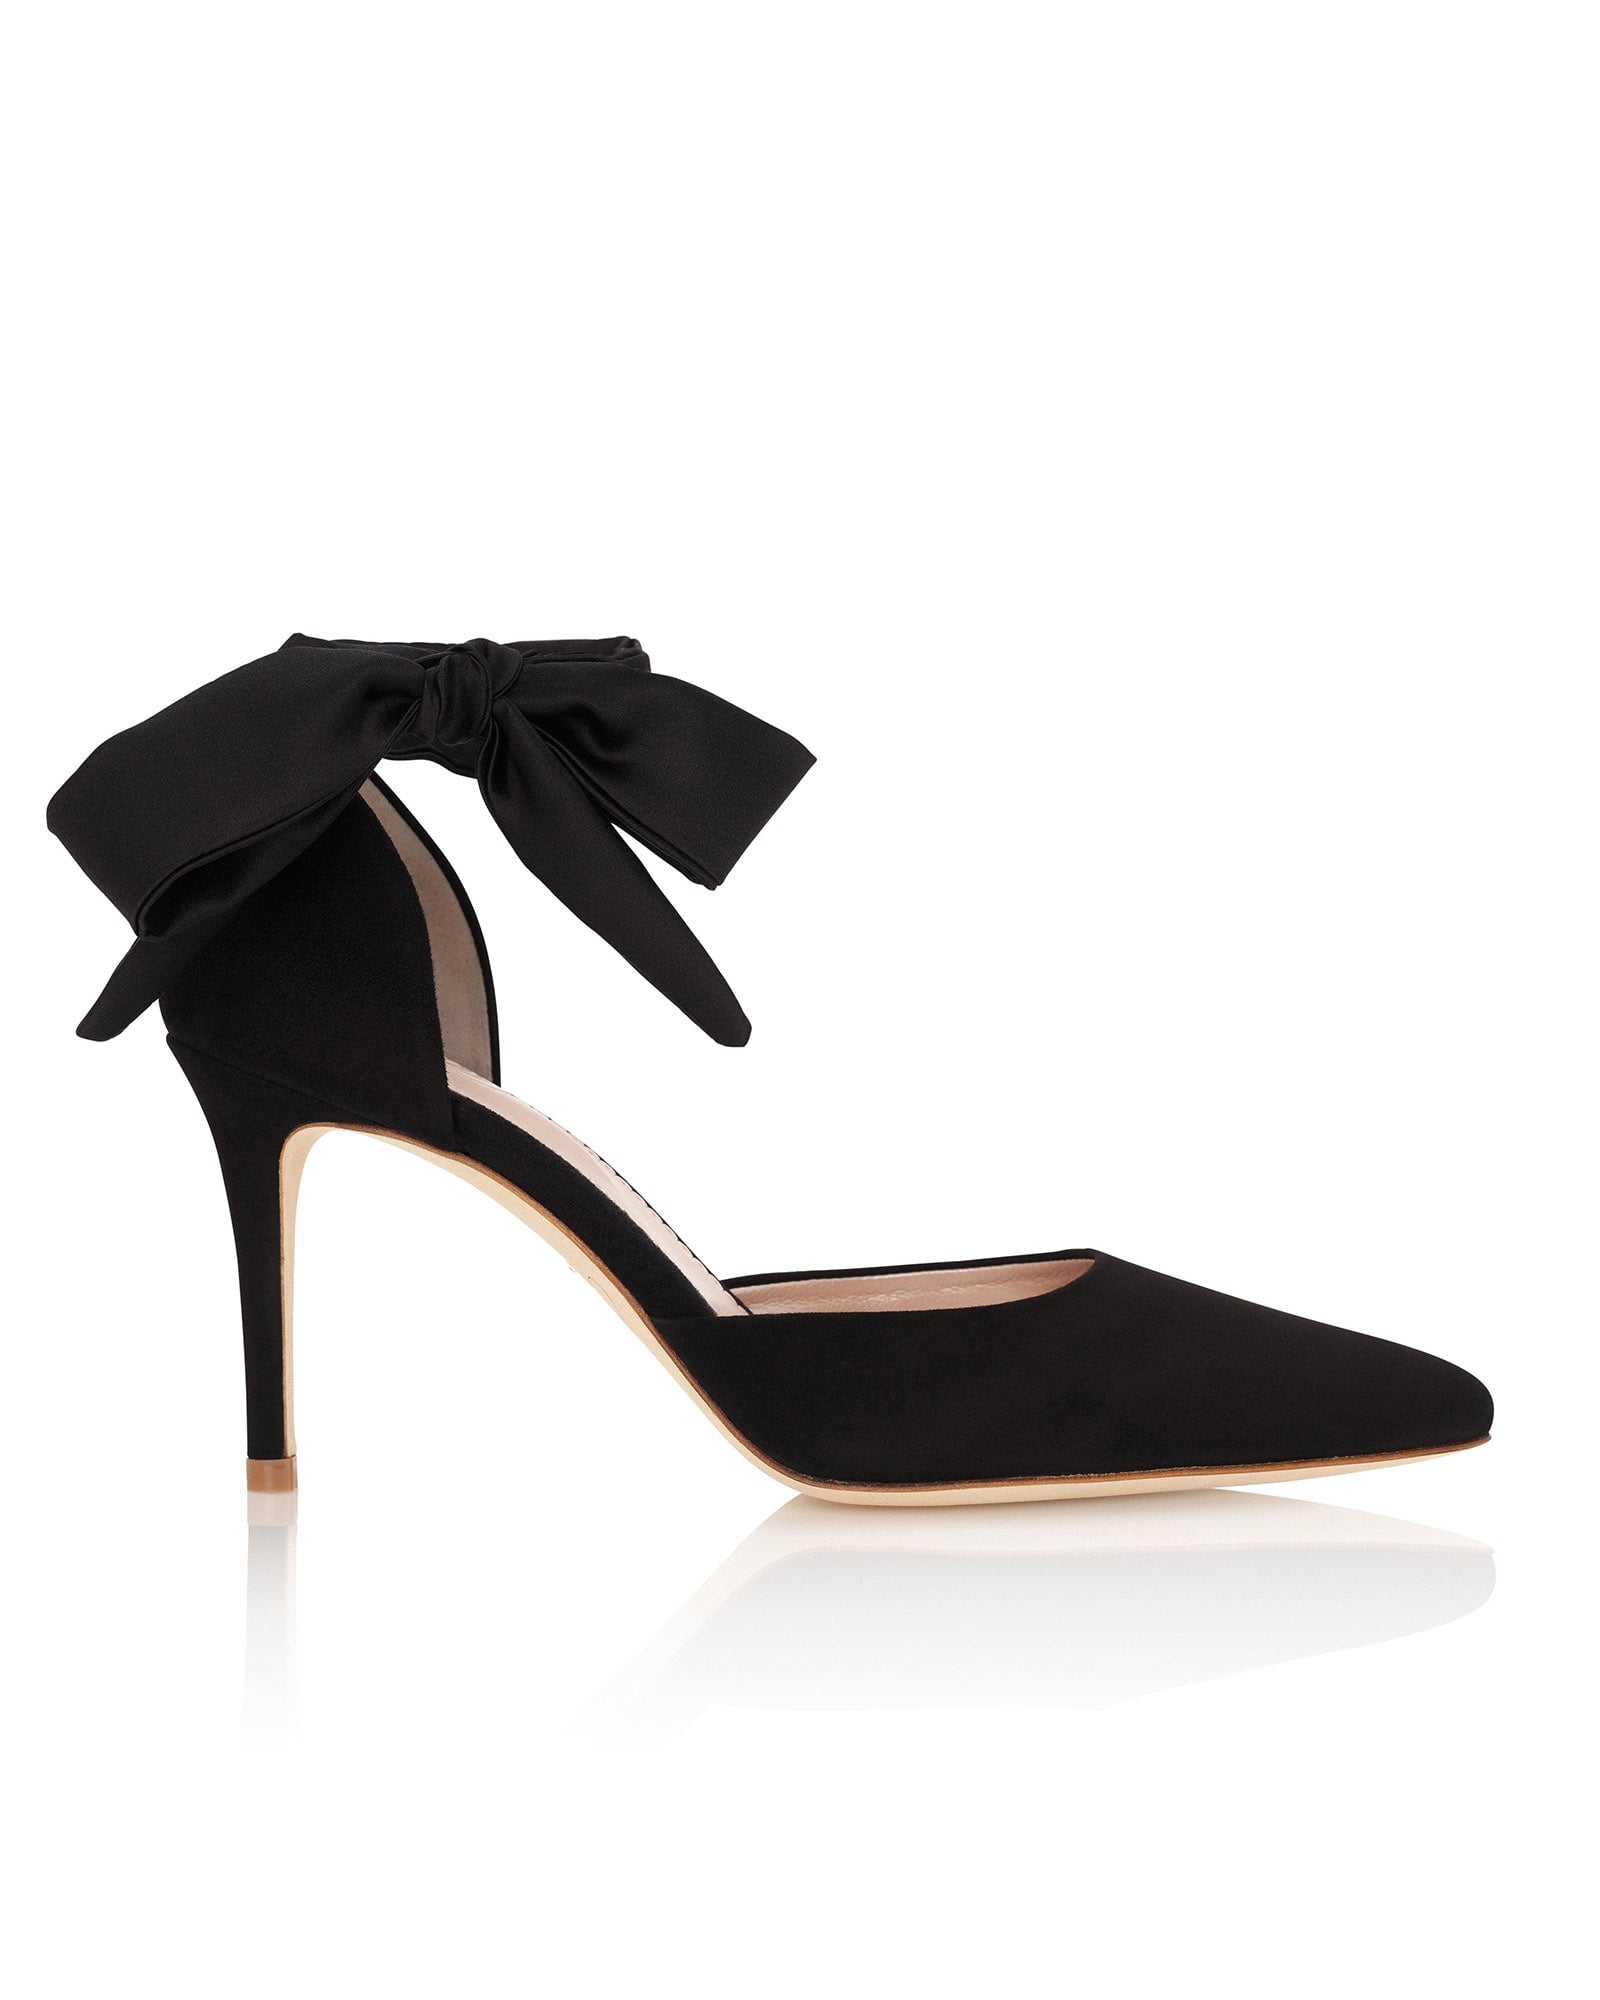 Harriet Jet Black Fashion Shoe Black Suede Court Shoes  image